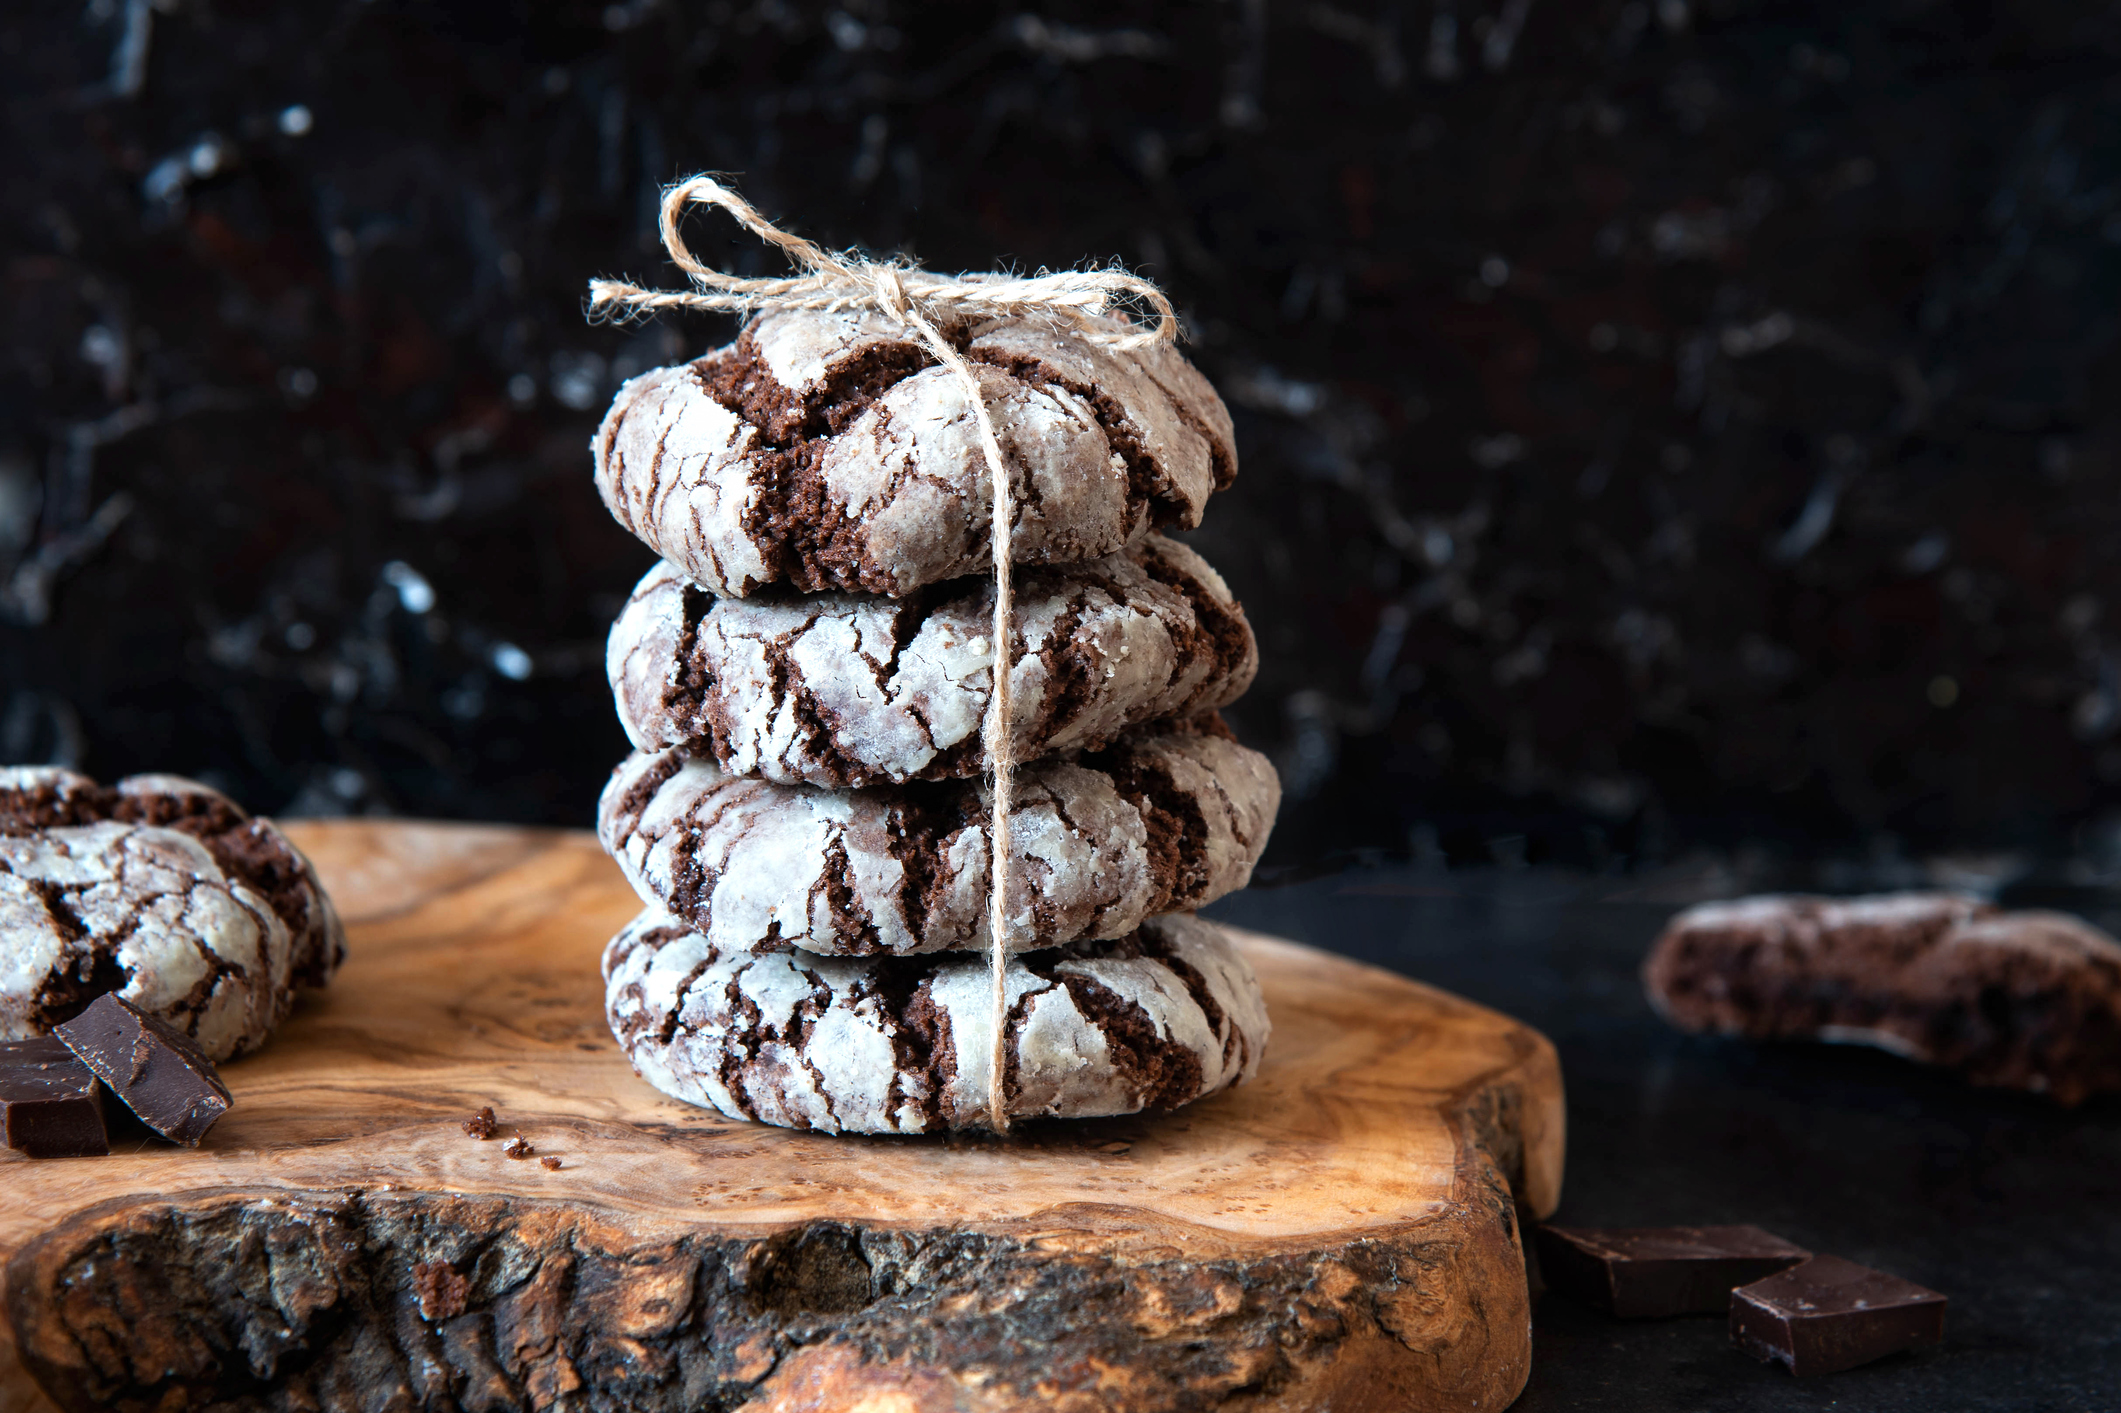 9. Chocolate Crinkle Cookies